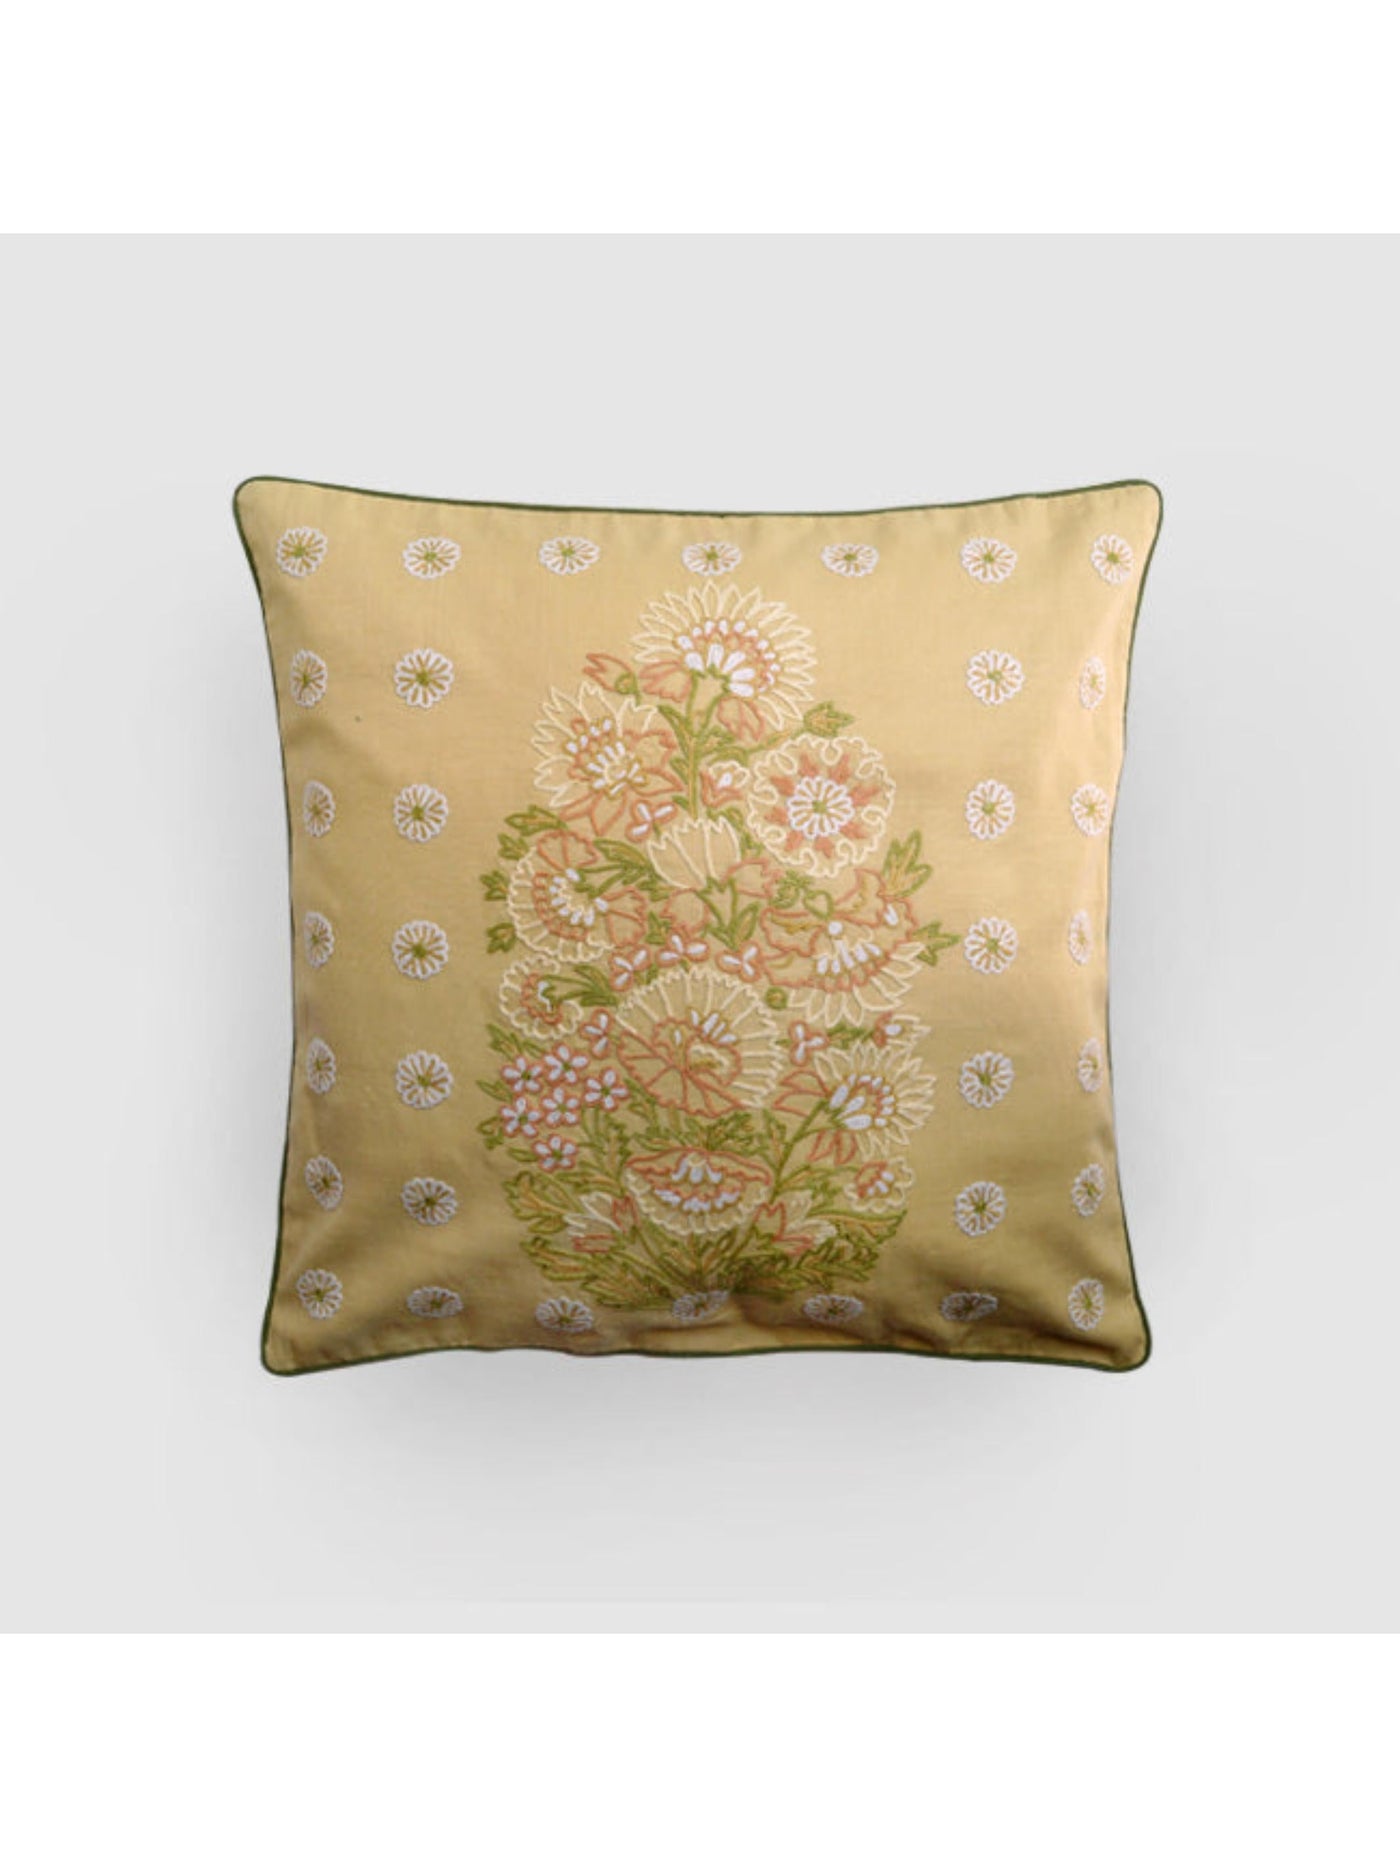 Cushion Cover - Dast-e-Gul Aari Embroidered - Beige